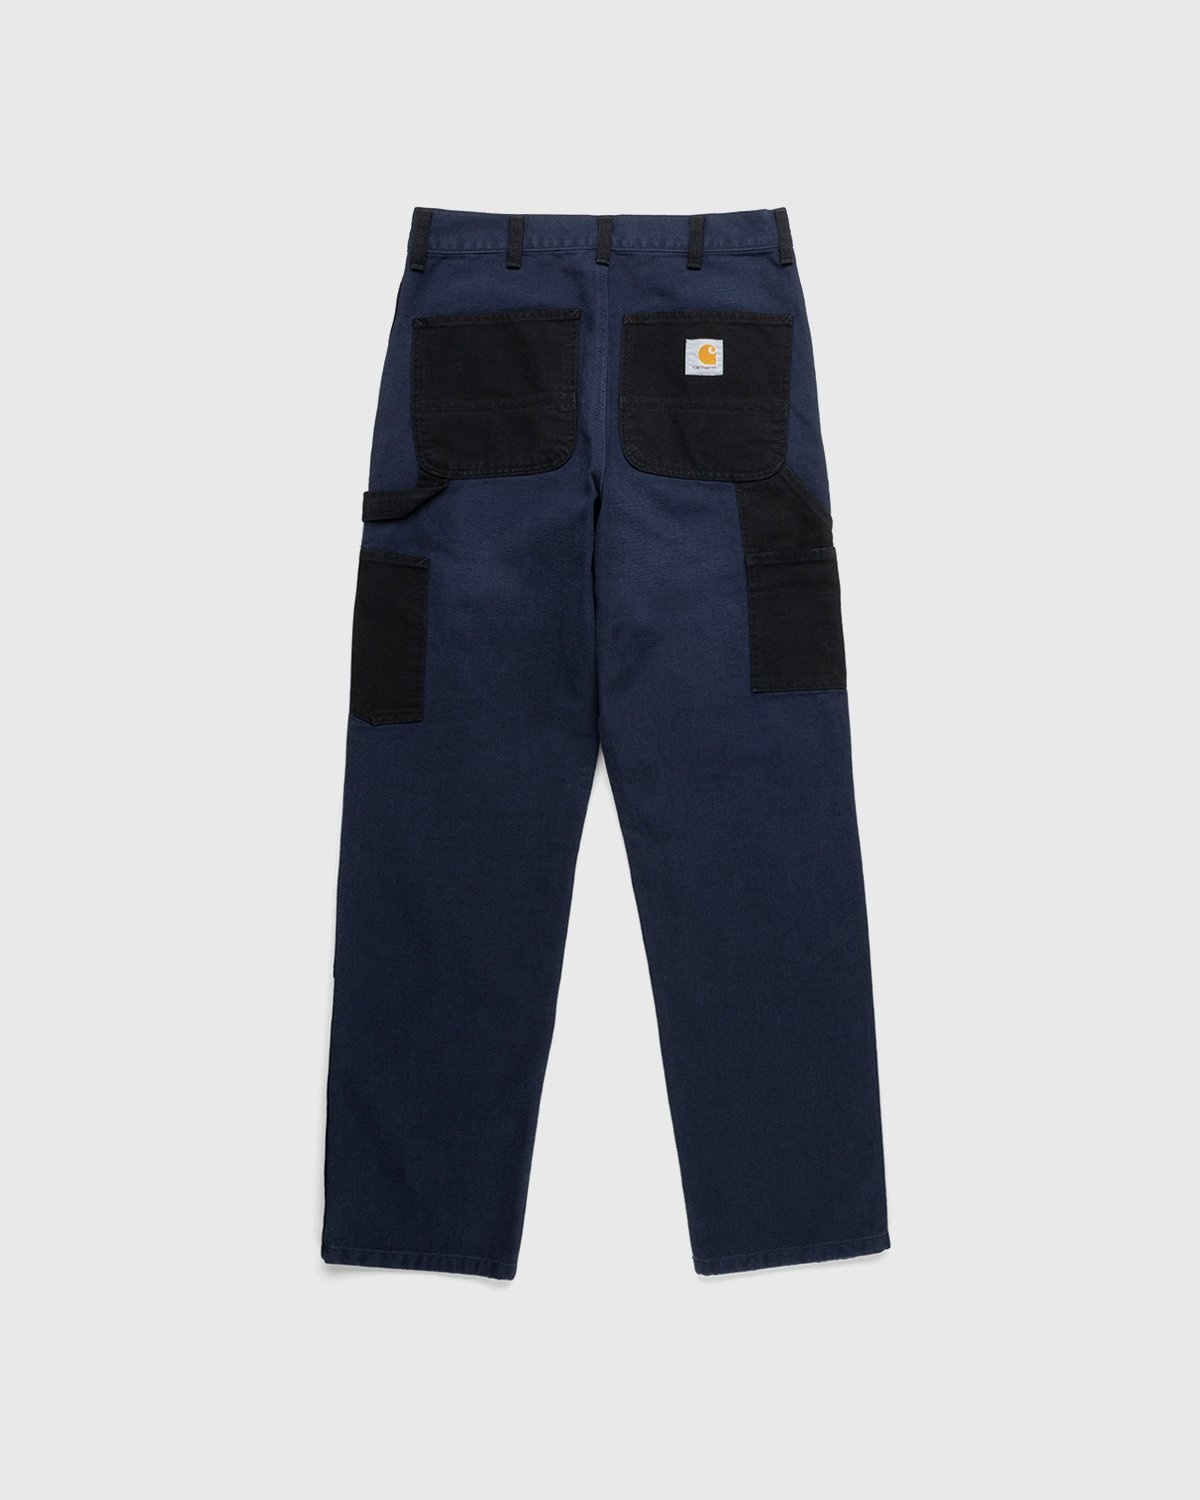 Carhartt WIP – Double Knee Pant Dark Navy - Work Pants - Blue - Image 2